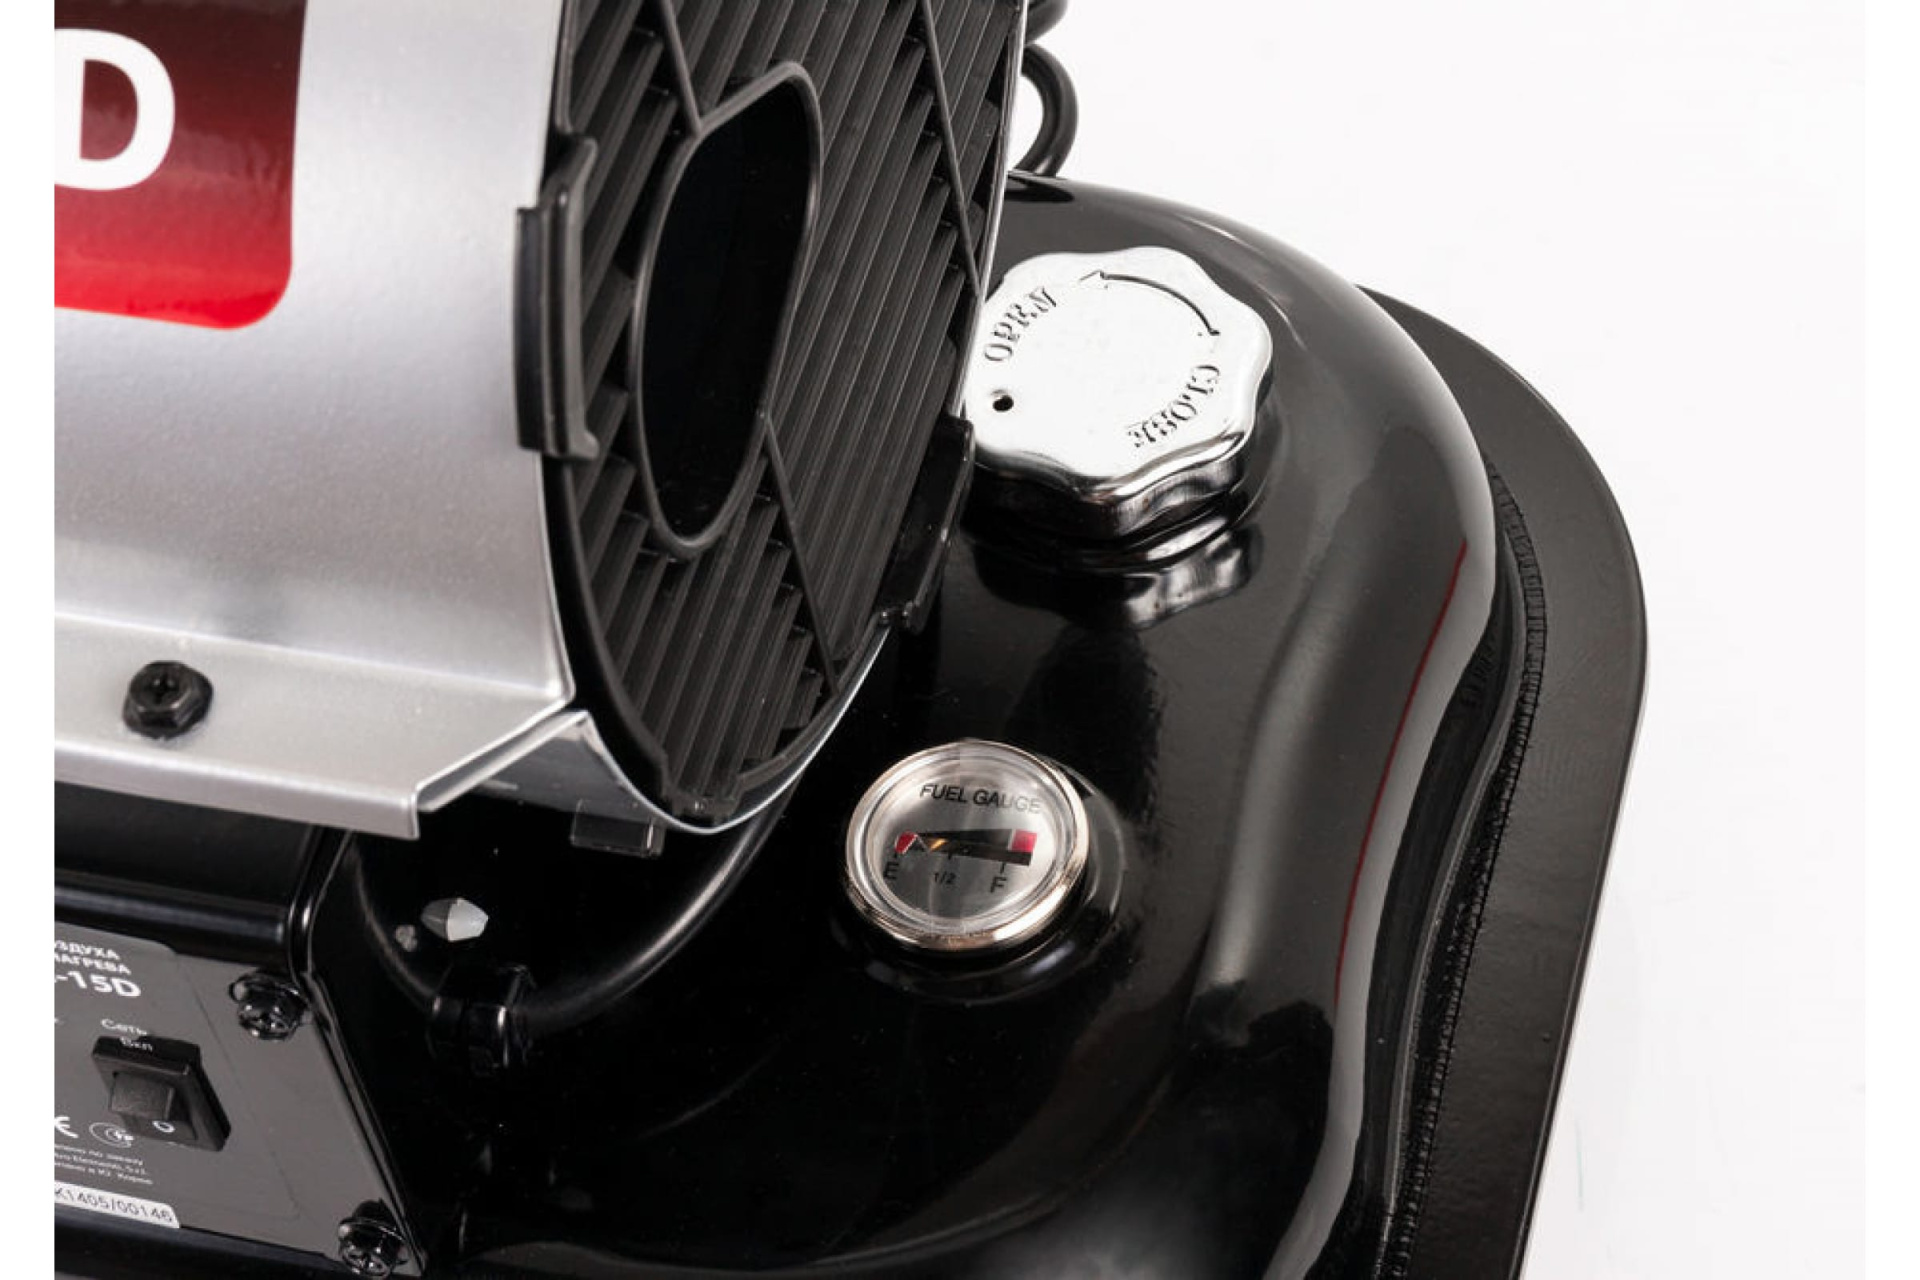 Нагреватель воздуха дизельный прямого нагрева QUATTRO ELEMENTI QE- 15D (15кВт, 205 м.куб/ч, бак 20л, 1,3л/ч, 15,7кг)